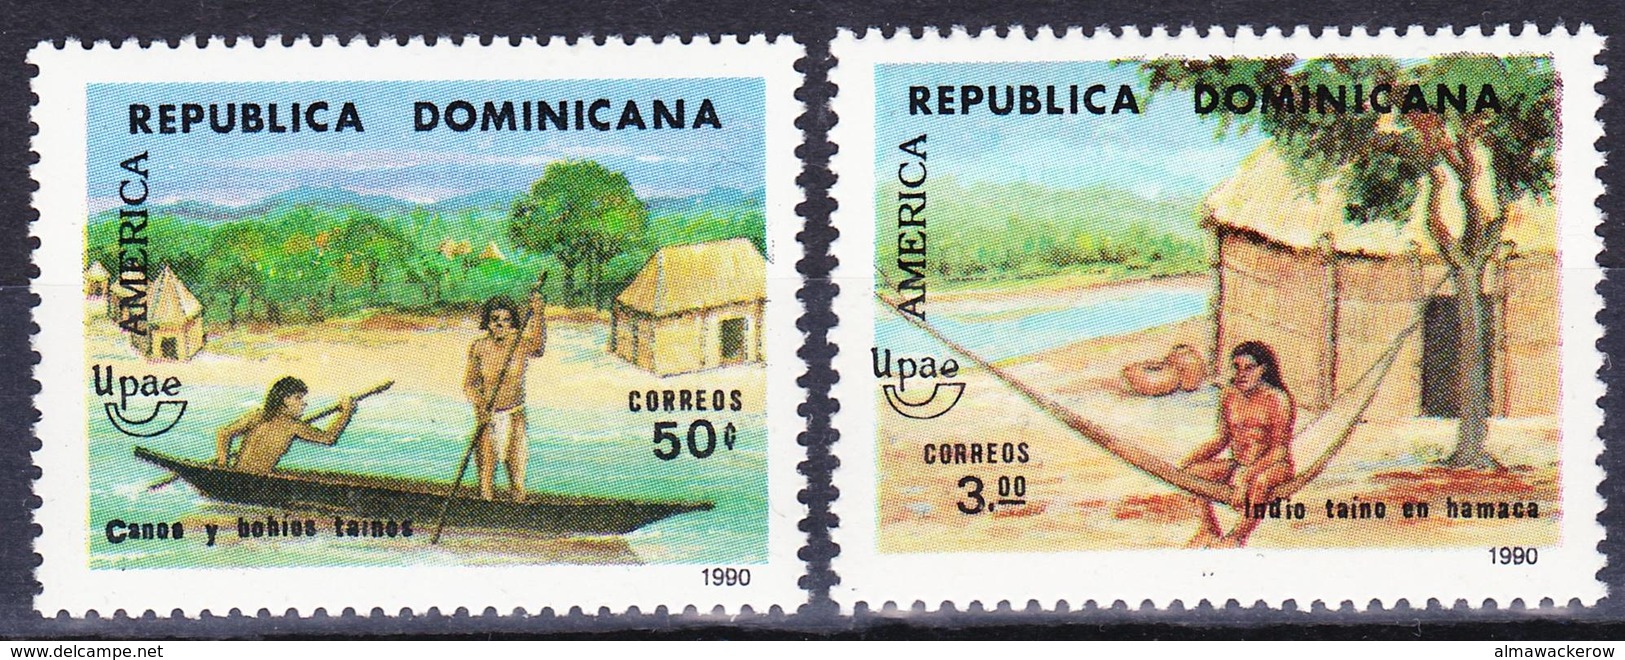 Republica Dominicana 1990 America Discovery Set (complete) Mi 1629-1630 MNH ** - Dominikanische Rep.